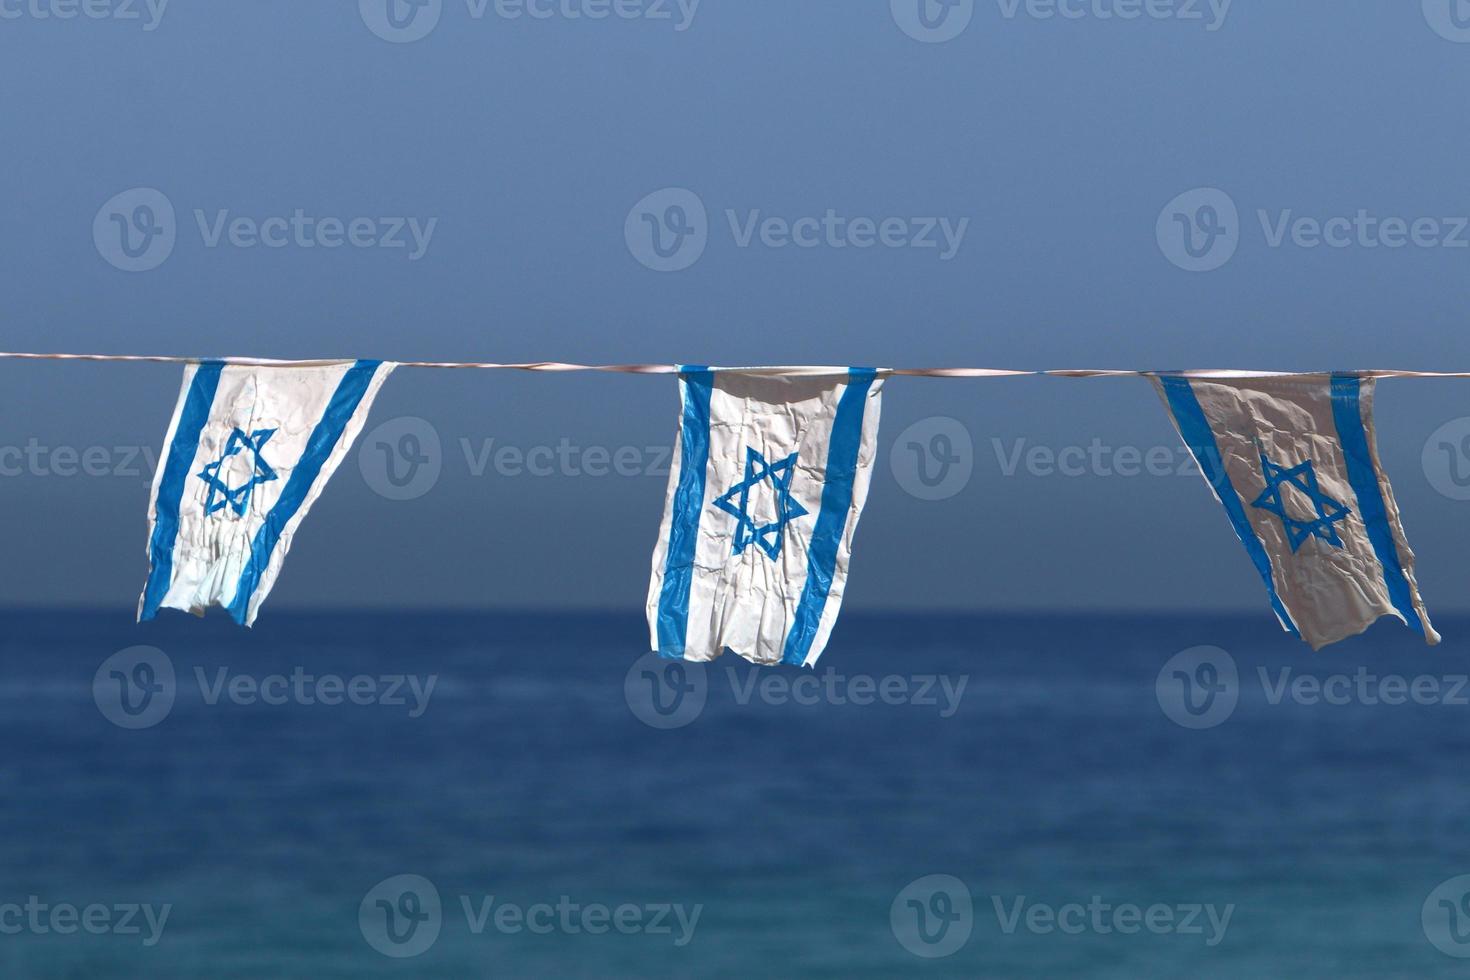 de blå och vit flagga av Israel med de sexuddig stjärna av david. foto